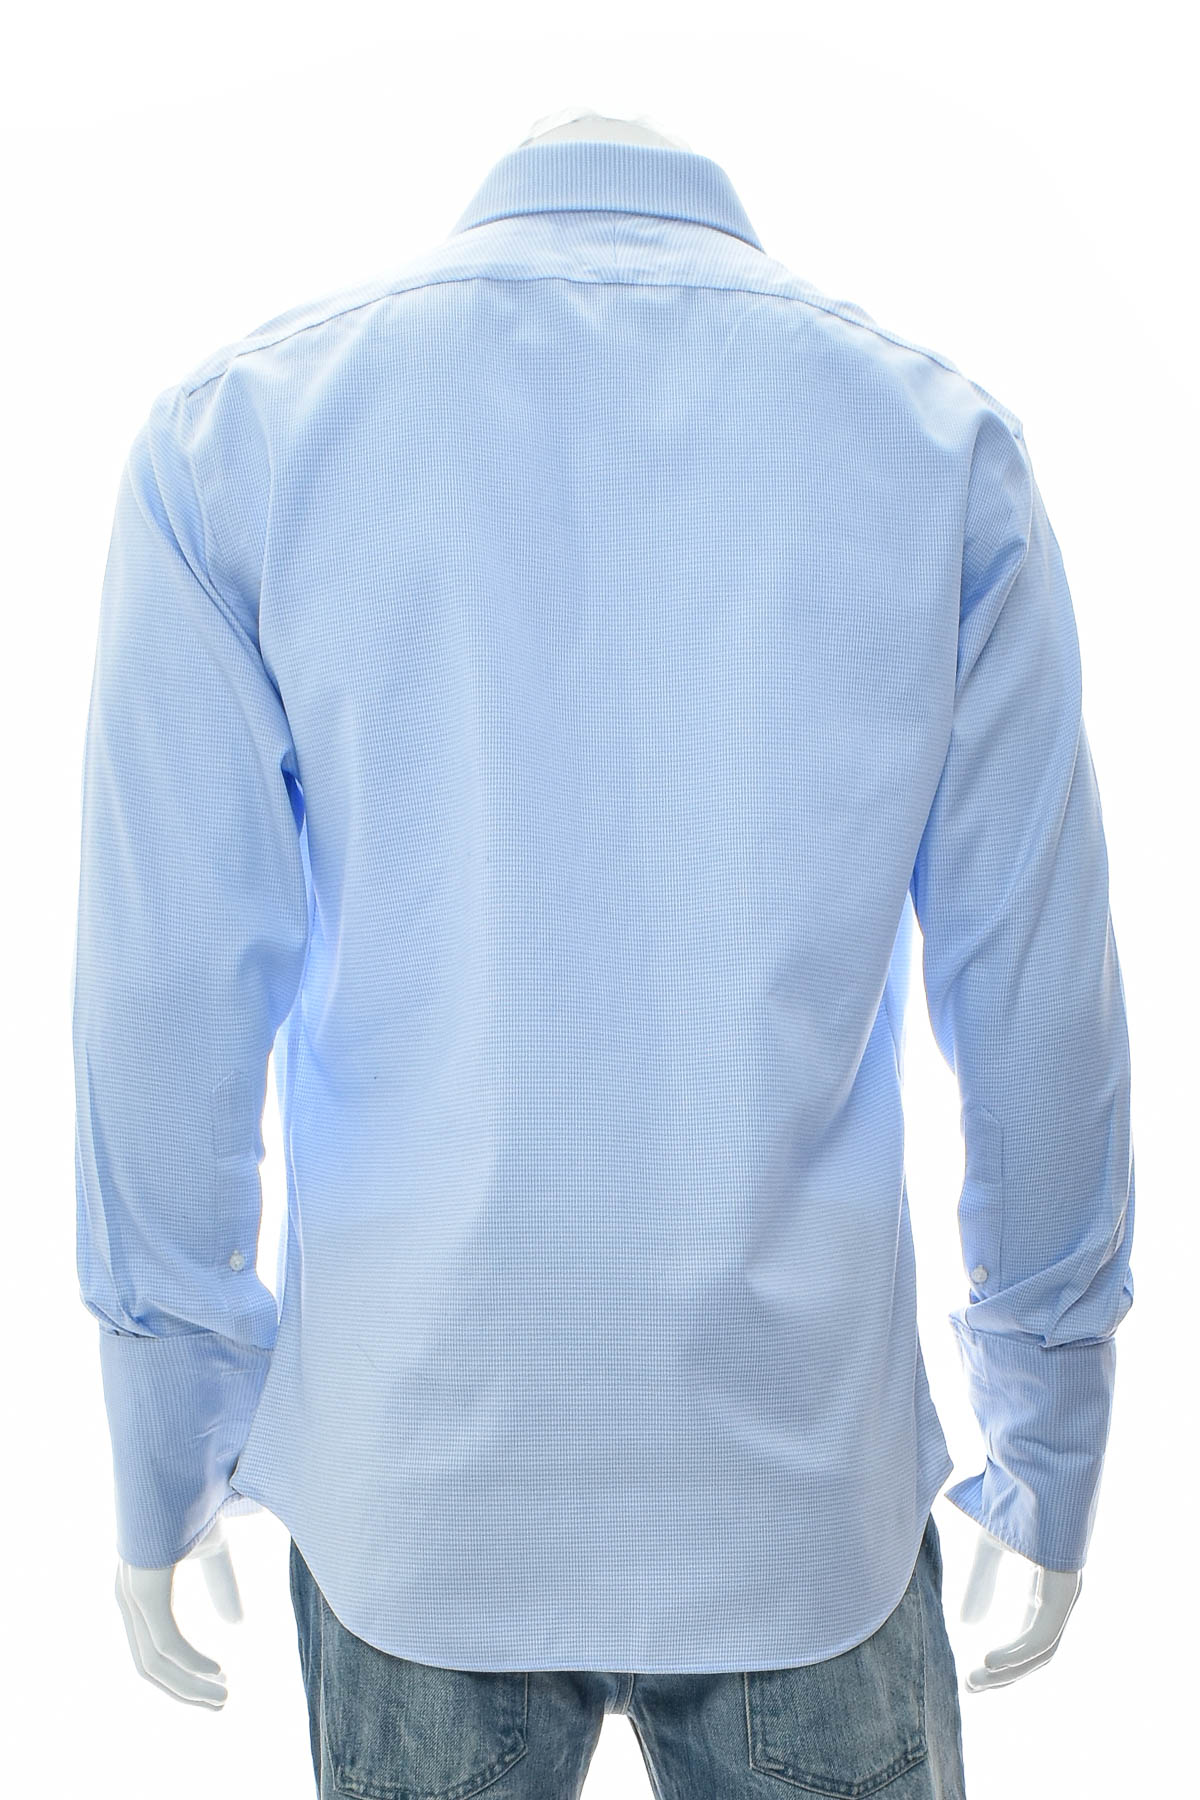 Ανδρικό πουκάμισο - TM Lewin - 1